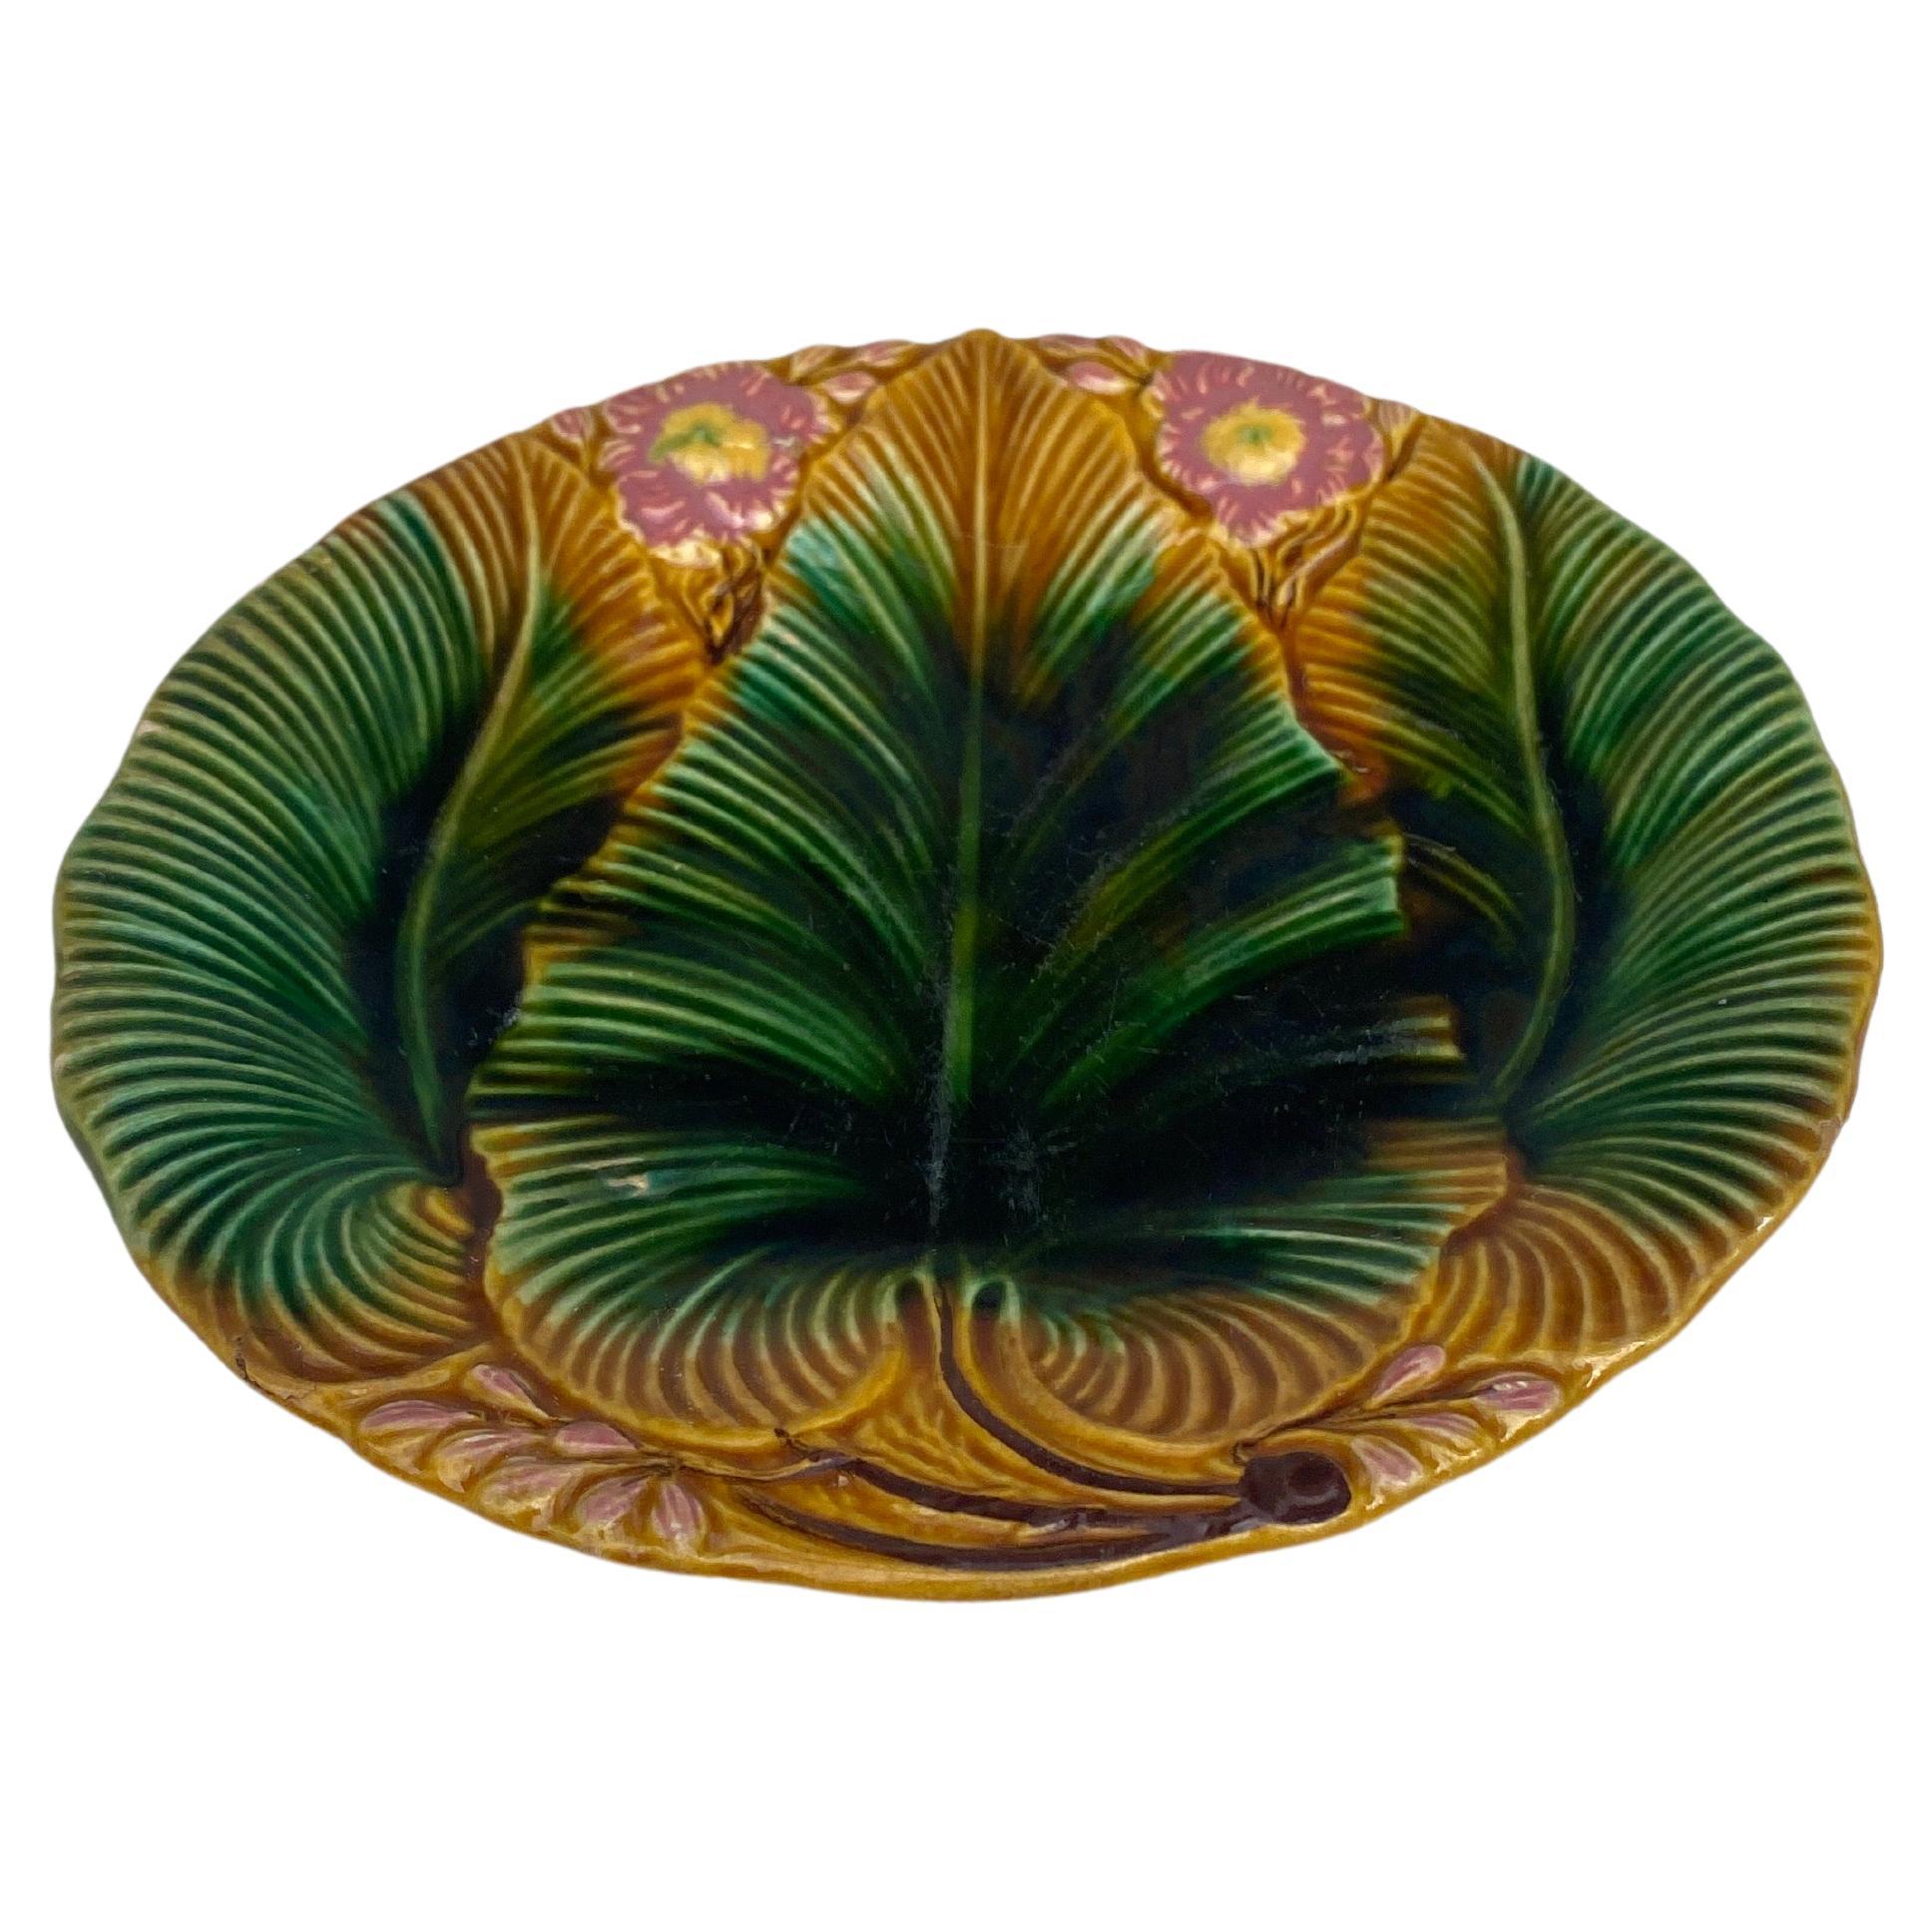 Palmblattteller aus Majolika, signiert Villeroy & Boch, um 1890.